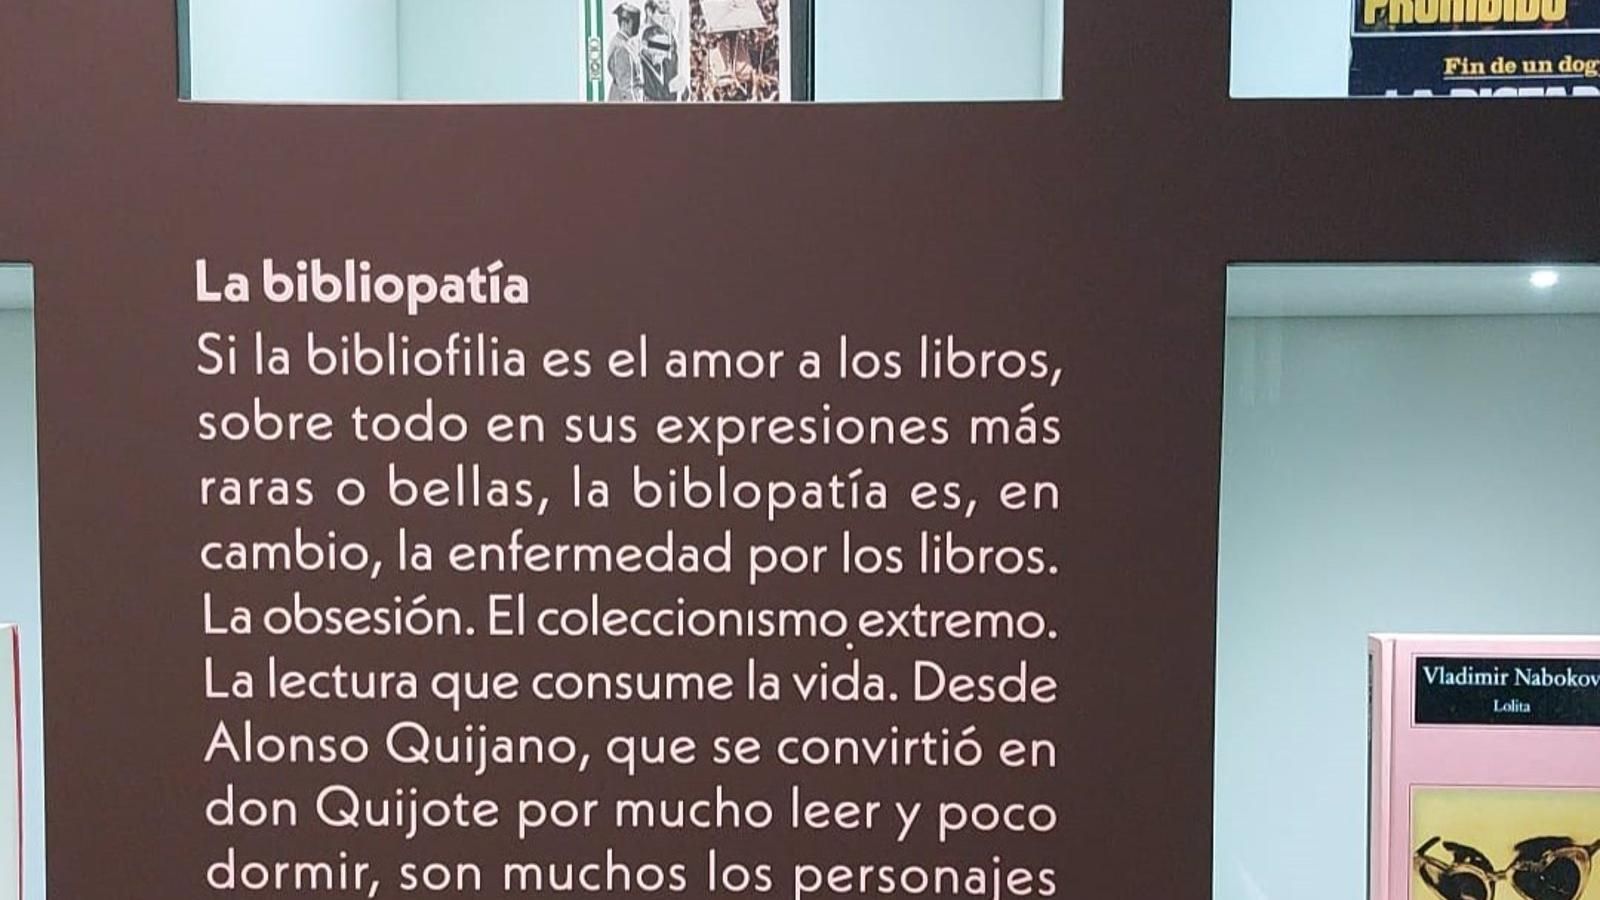 La Biblioteca Nacional baja al 'infierno' de obras censuradas como 'Lolita', 'El Capital' y también el filme 'Rocío'